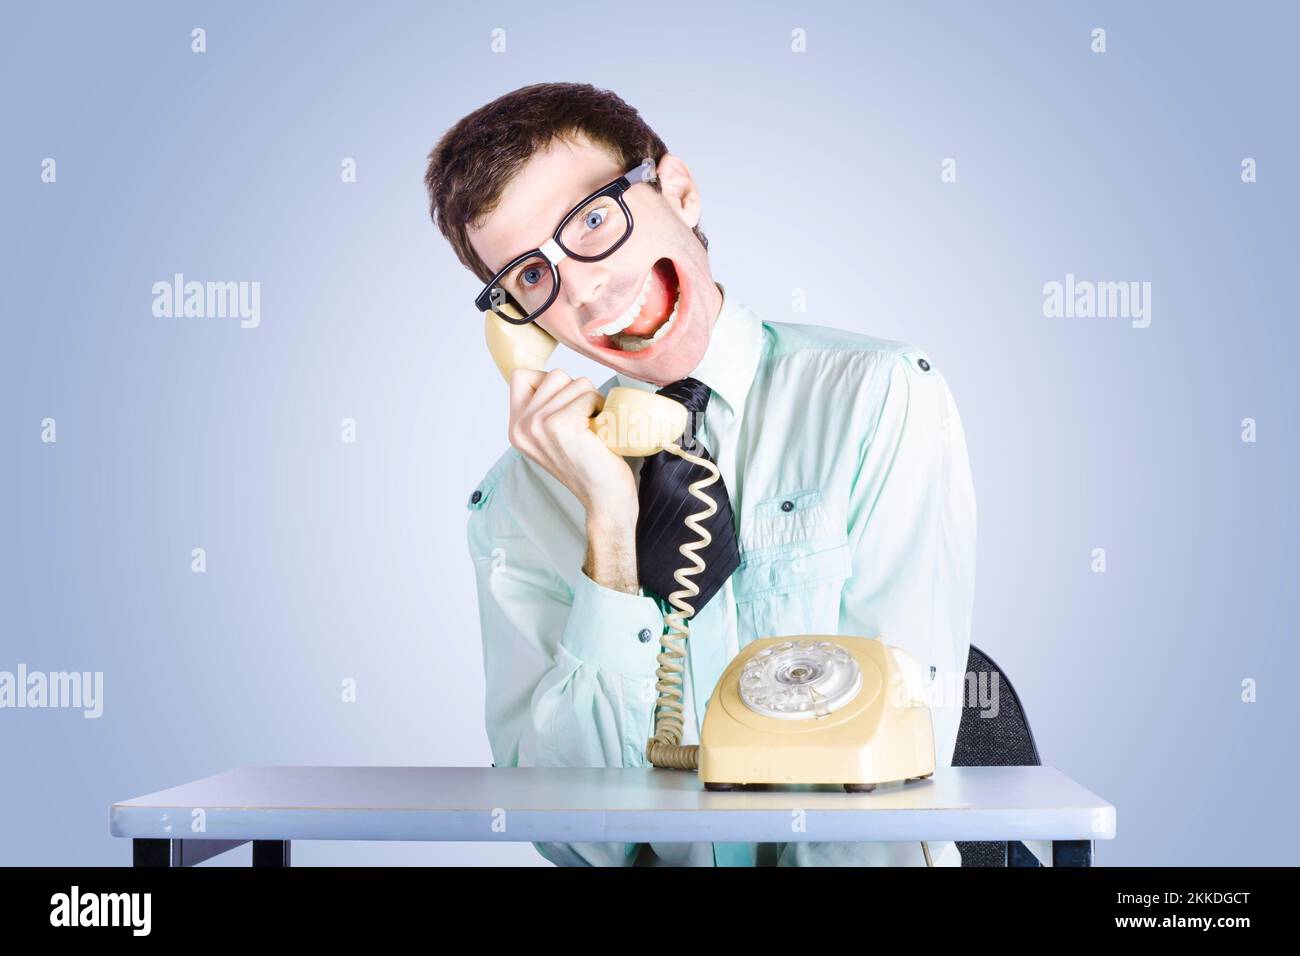 Lustige Porträt eines lautes nerdy Geschäftsmannes machen eine Menge von großen Gespräch mit seinem riesigen Maul Stockfoto